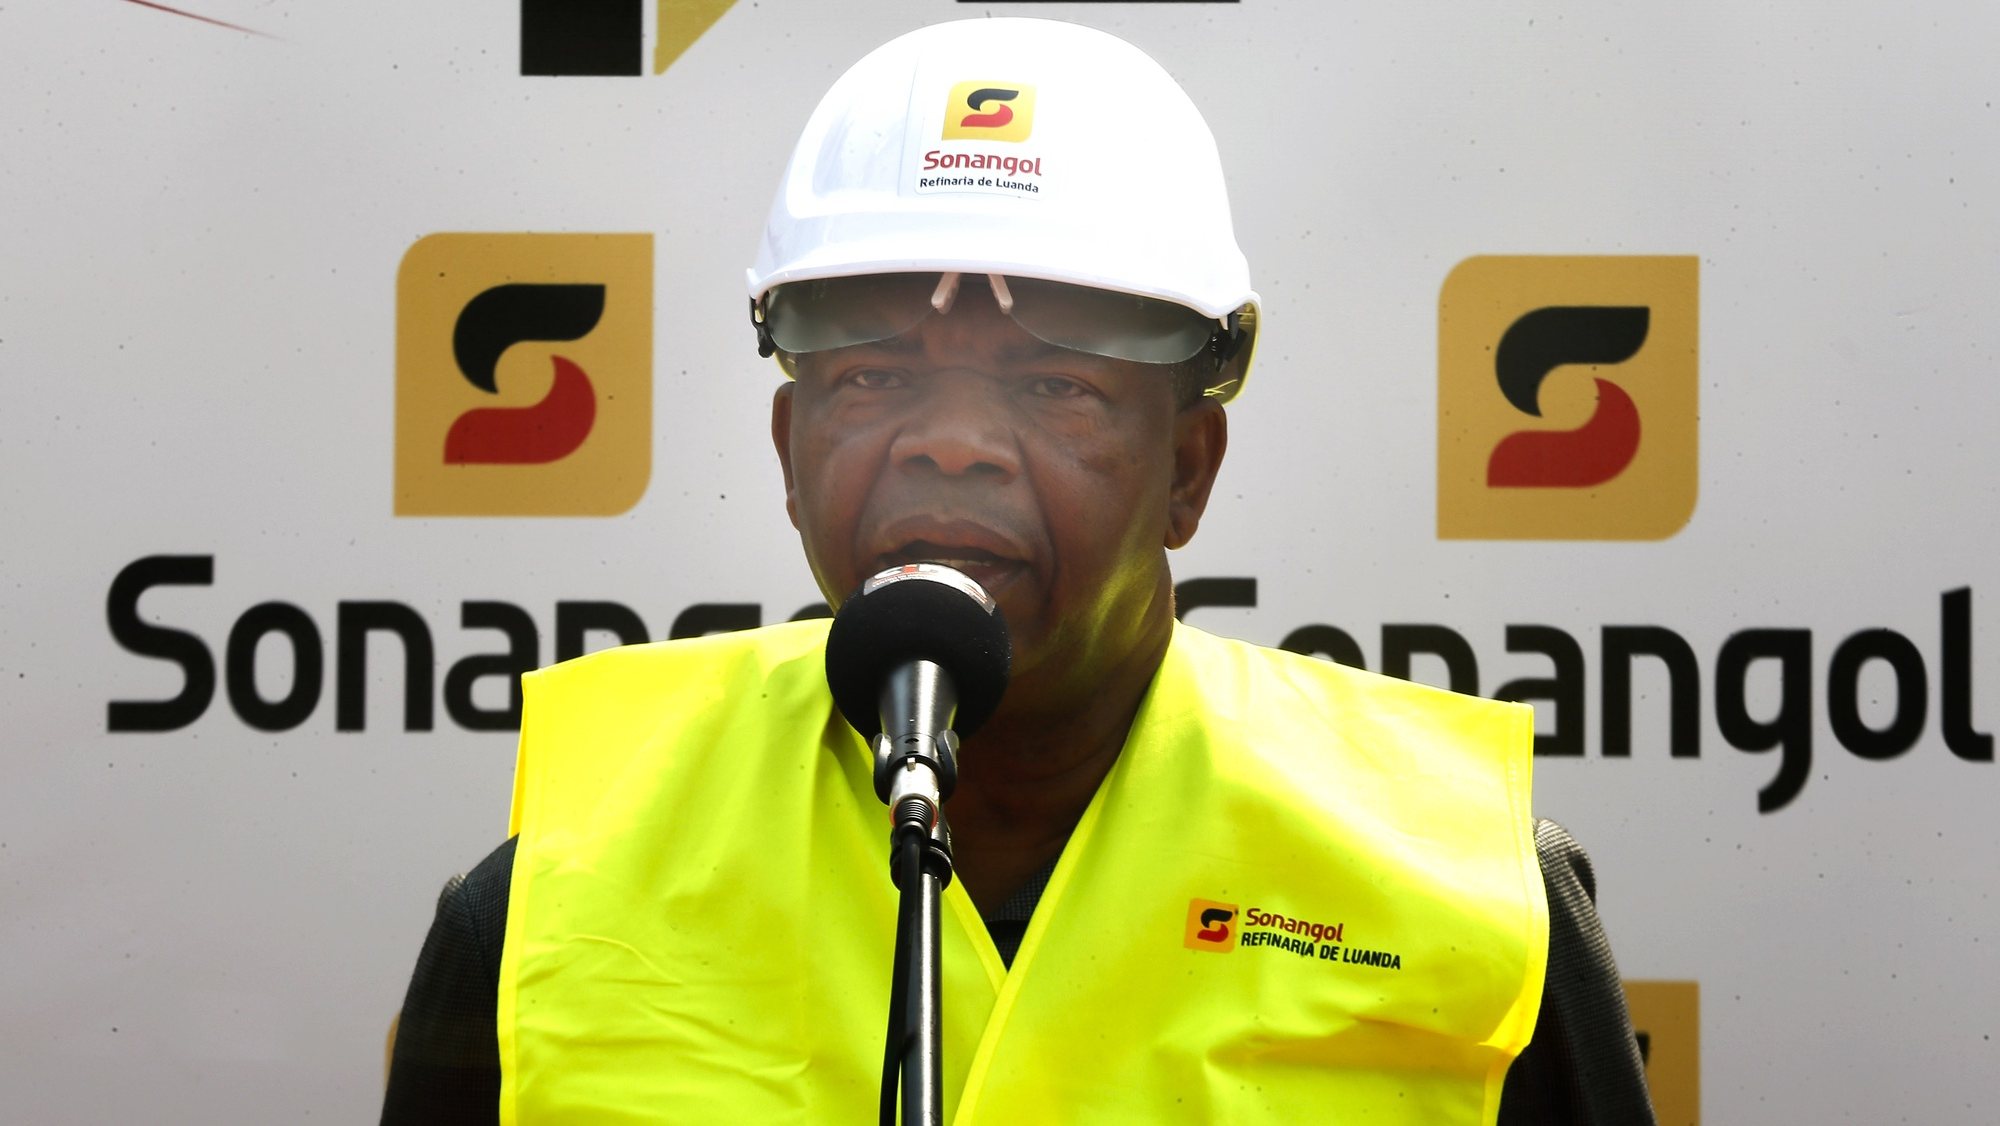 O Presidente de Angola, João Lourenço, discursa durante a cerimónia de inauguração da refinaria de Luanda, em Luanda, Angola, 07 de julho de 2022. O novo complexo de produção de gasolina na refinaria de Luanda, um investimento de 235 milhões de dólares (219,4 milhões de euros) da petrolífera estatal Sonangol, foi hoje inaugurado pelo Presidente angolano, João Lourenço. AMPE ROGÉRIO/LUSA